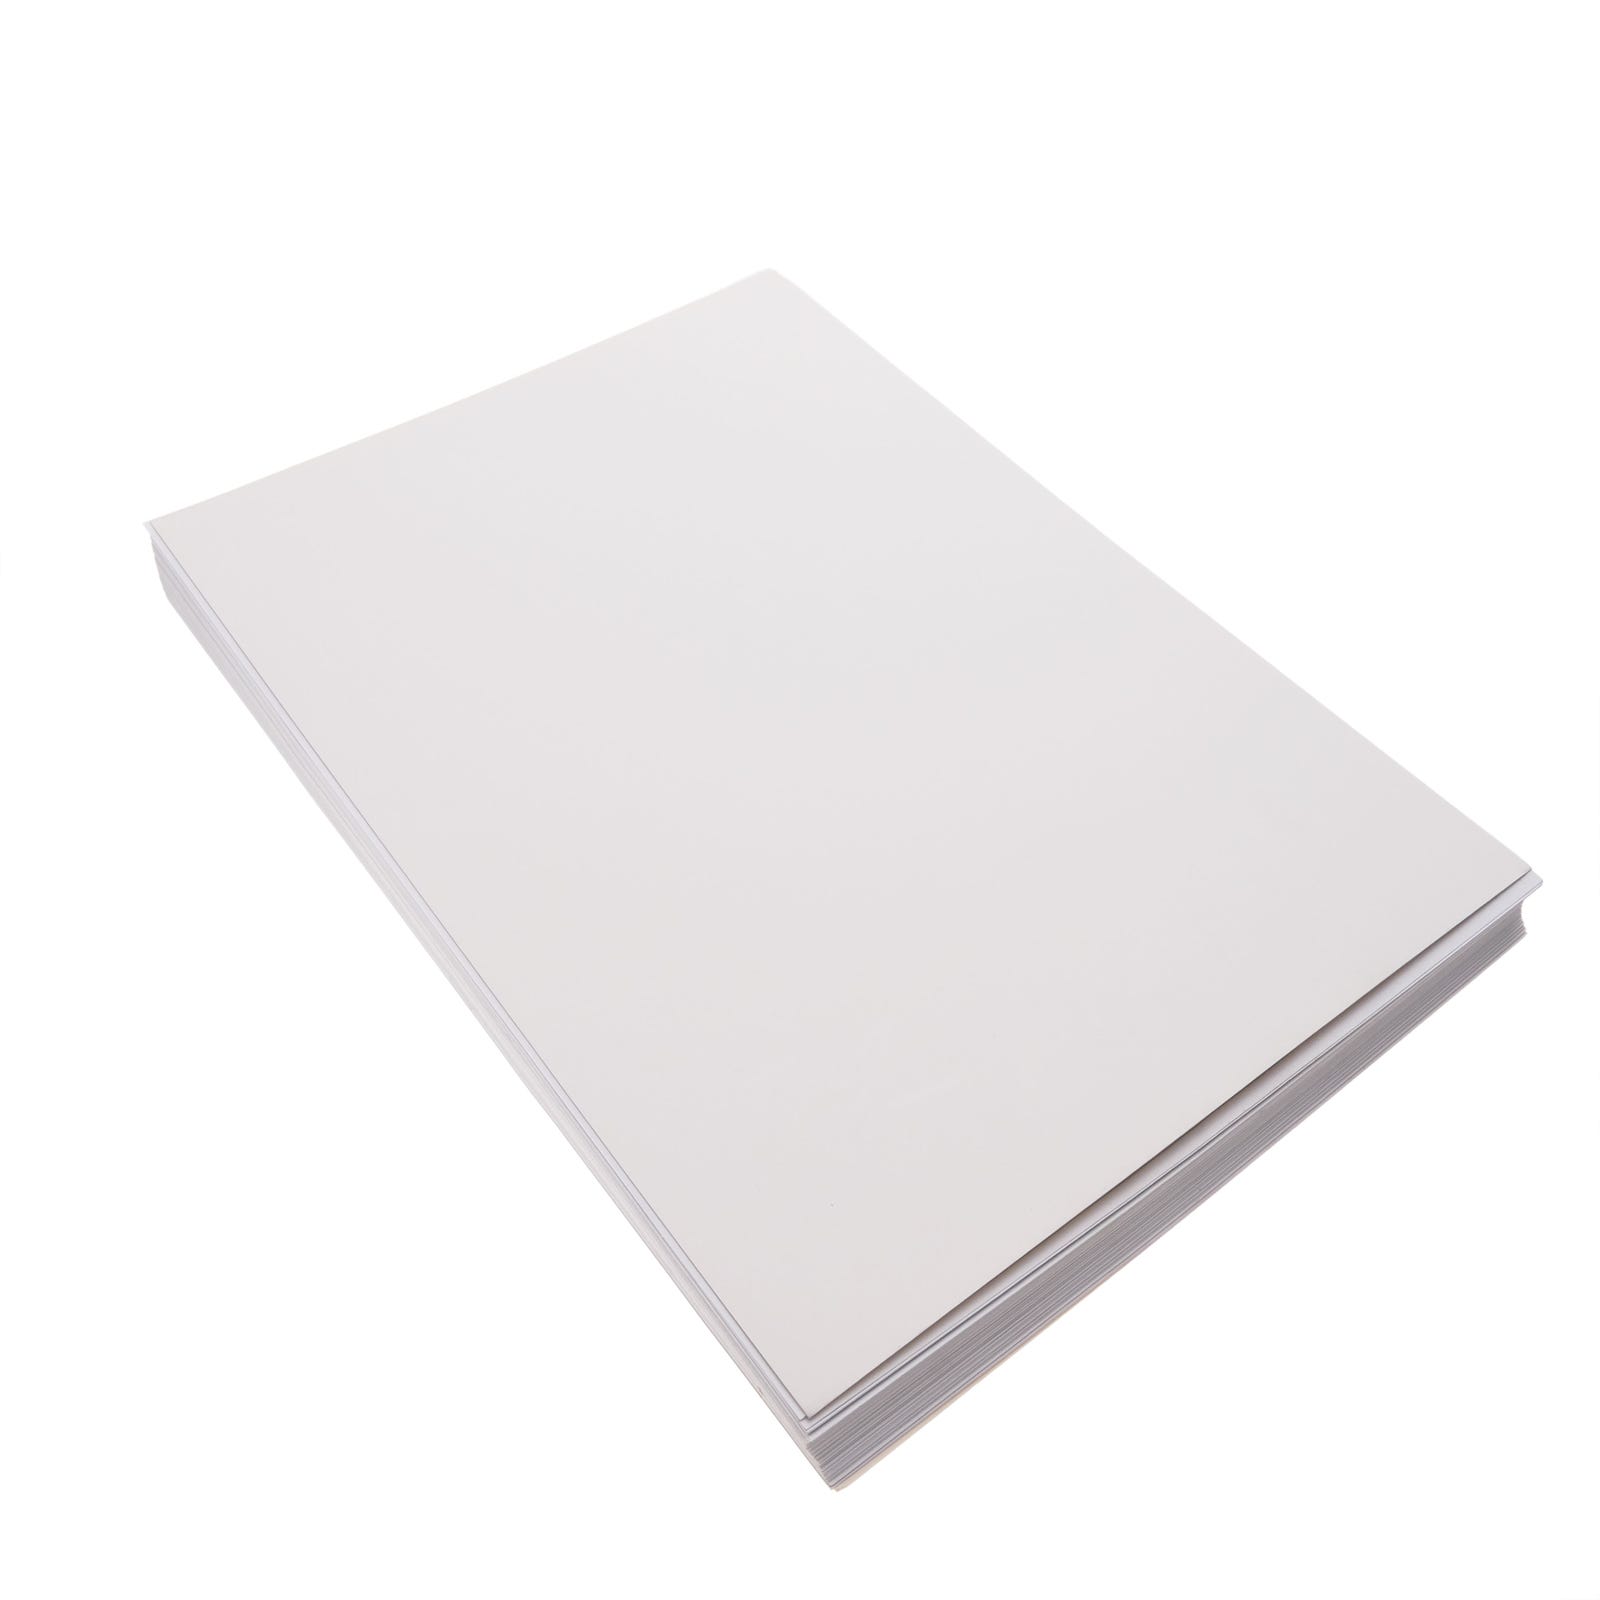 Etiquetas blancas 100 hojas para impresora tamaño A4 - Etiquetas 100 hojas  para impresora tamaño A4 - Publipack Calafell. Tienda online de bolsas y  productos de embalaje comercial.